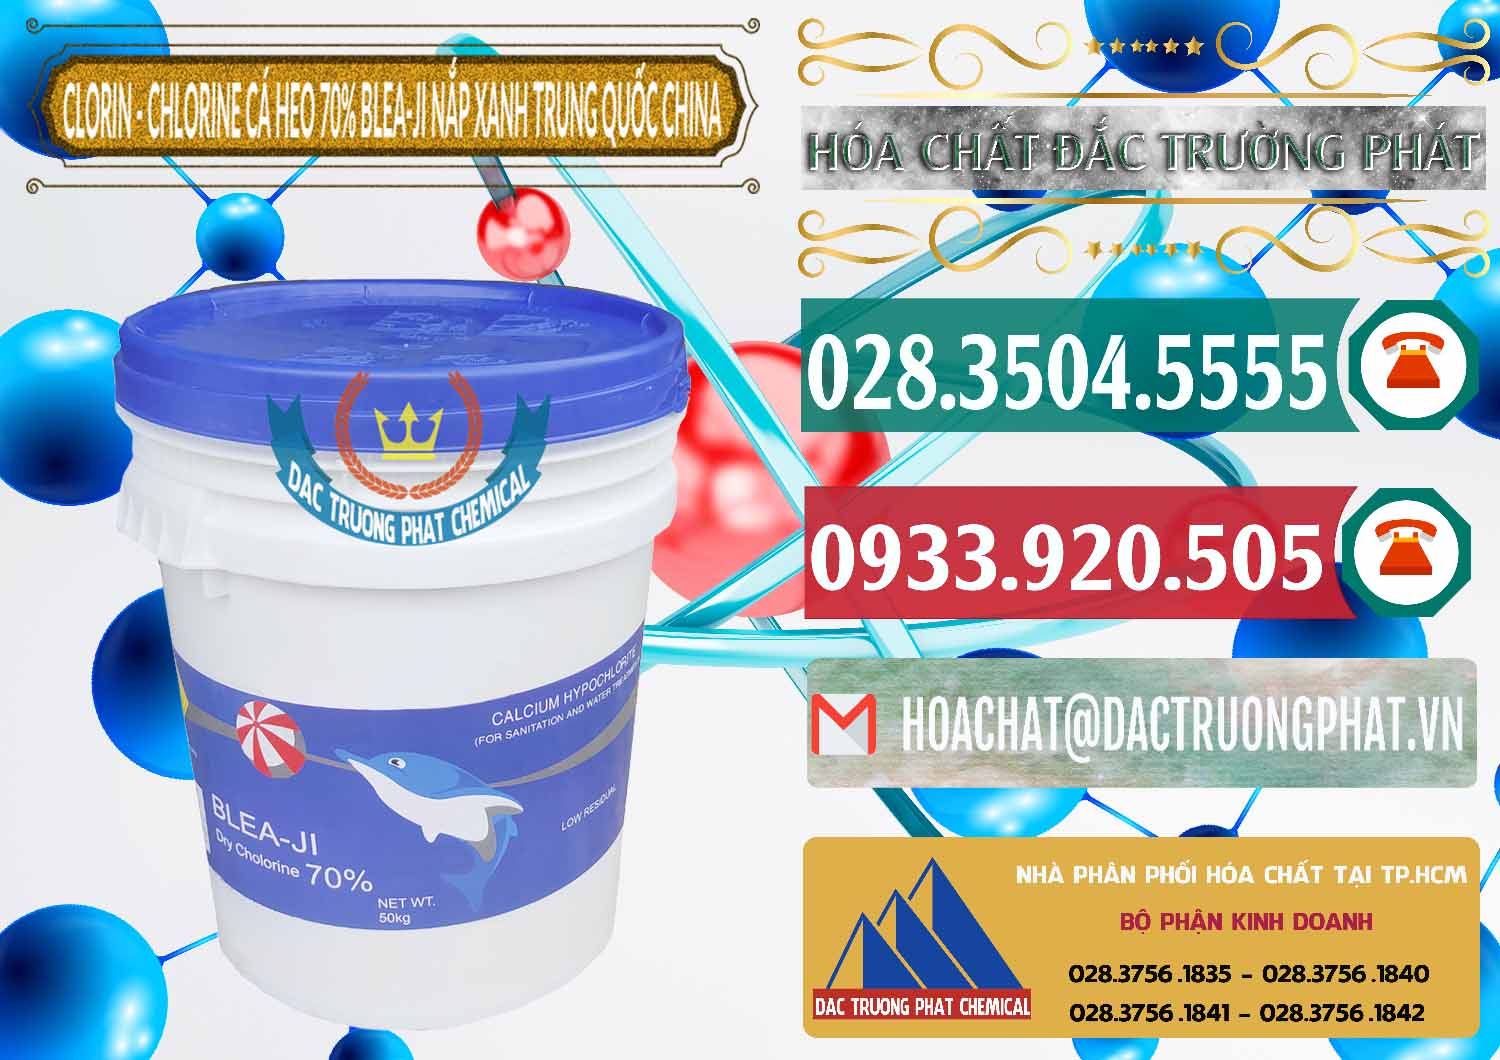 Công ty chuyên bán _ cung cấp Clorin - Chlorine Cá Heo 70% Cá Heo Blea-Ji Thùng Tròn Nắp Xanh Trung Quốc China - 0208 - Đơn vị chuyên cung cấp và nhập khẩu hóa chất tại TP.HCM - muabanhoachat.vn